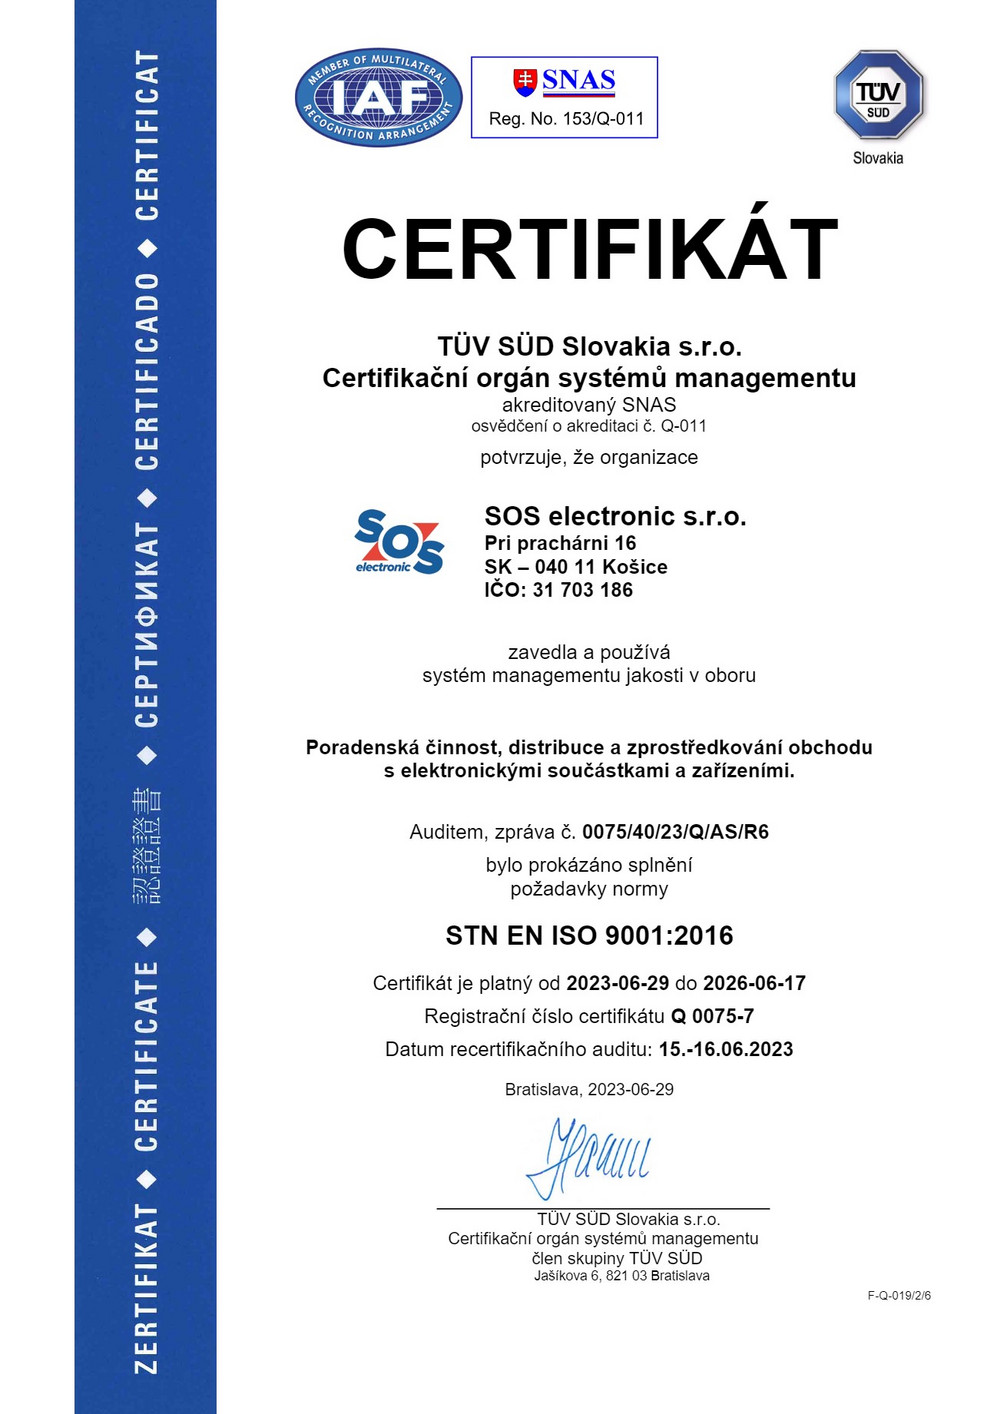 Certifikát ISO 9001 pre nás znamená viac ako len dodržiavanie predpisov